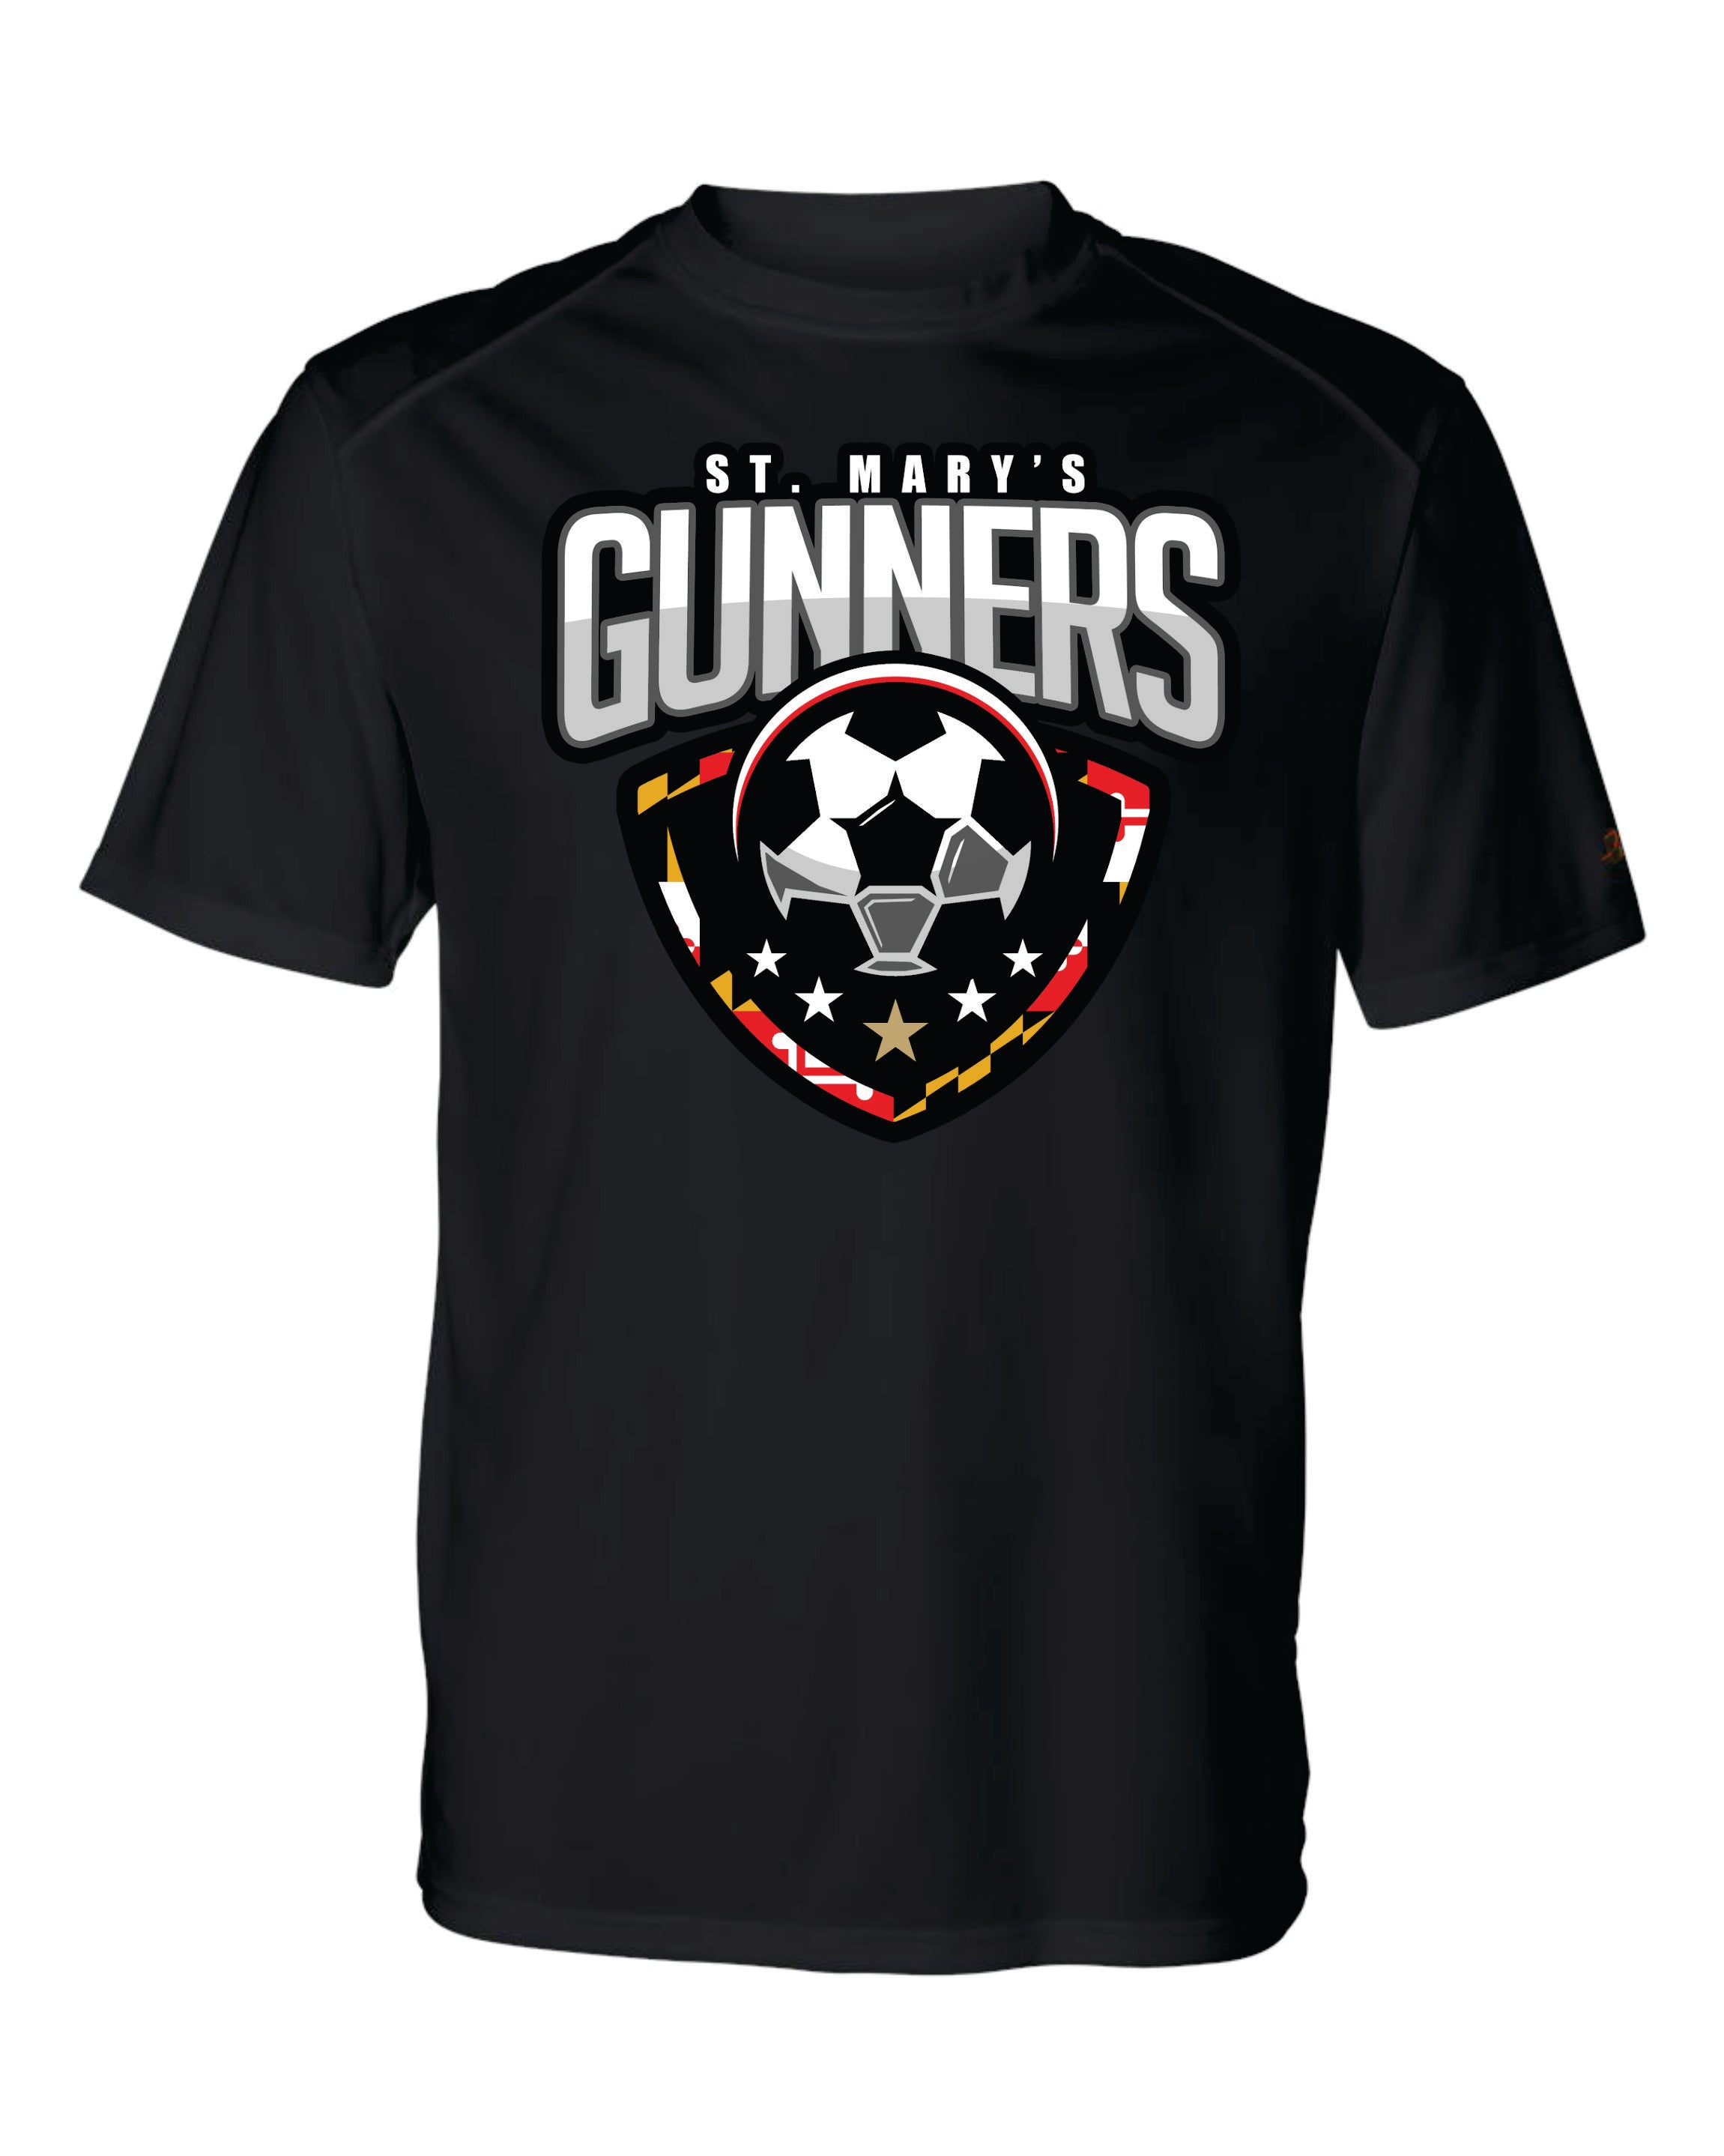 Gunners Short Sleeve Badger Dri Fit T shirt-WOMEN